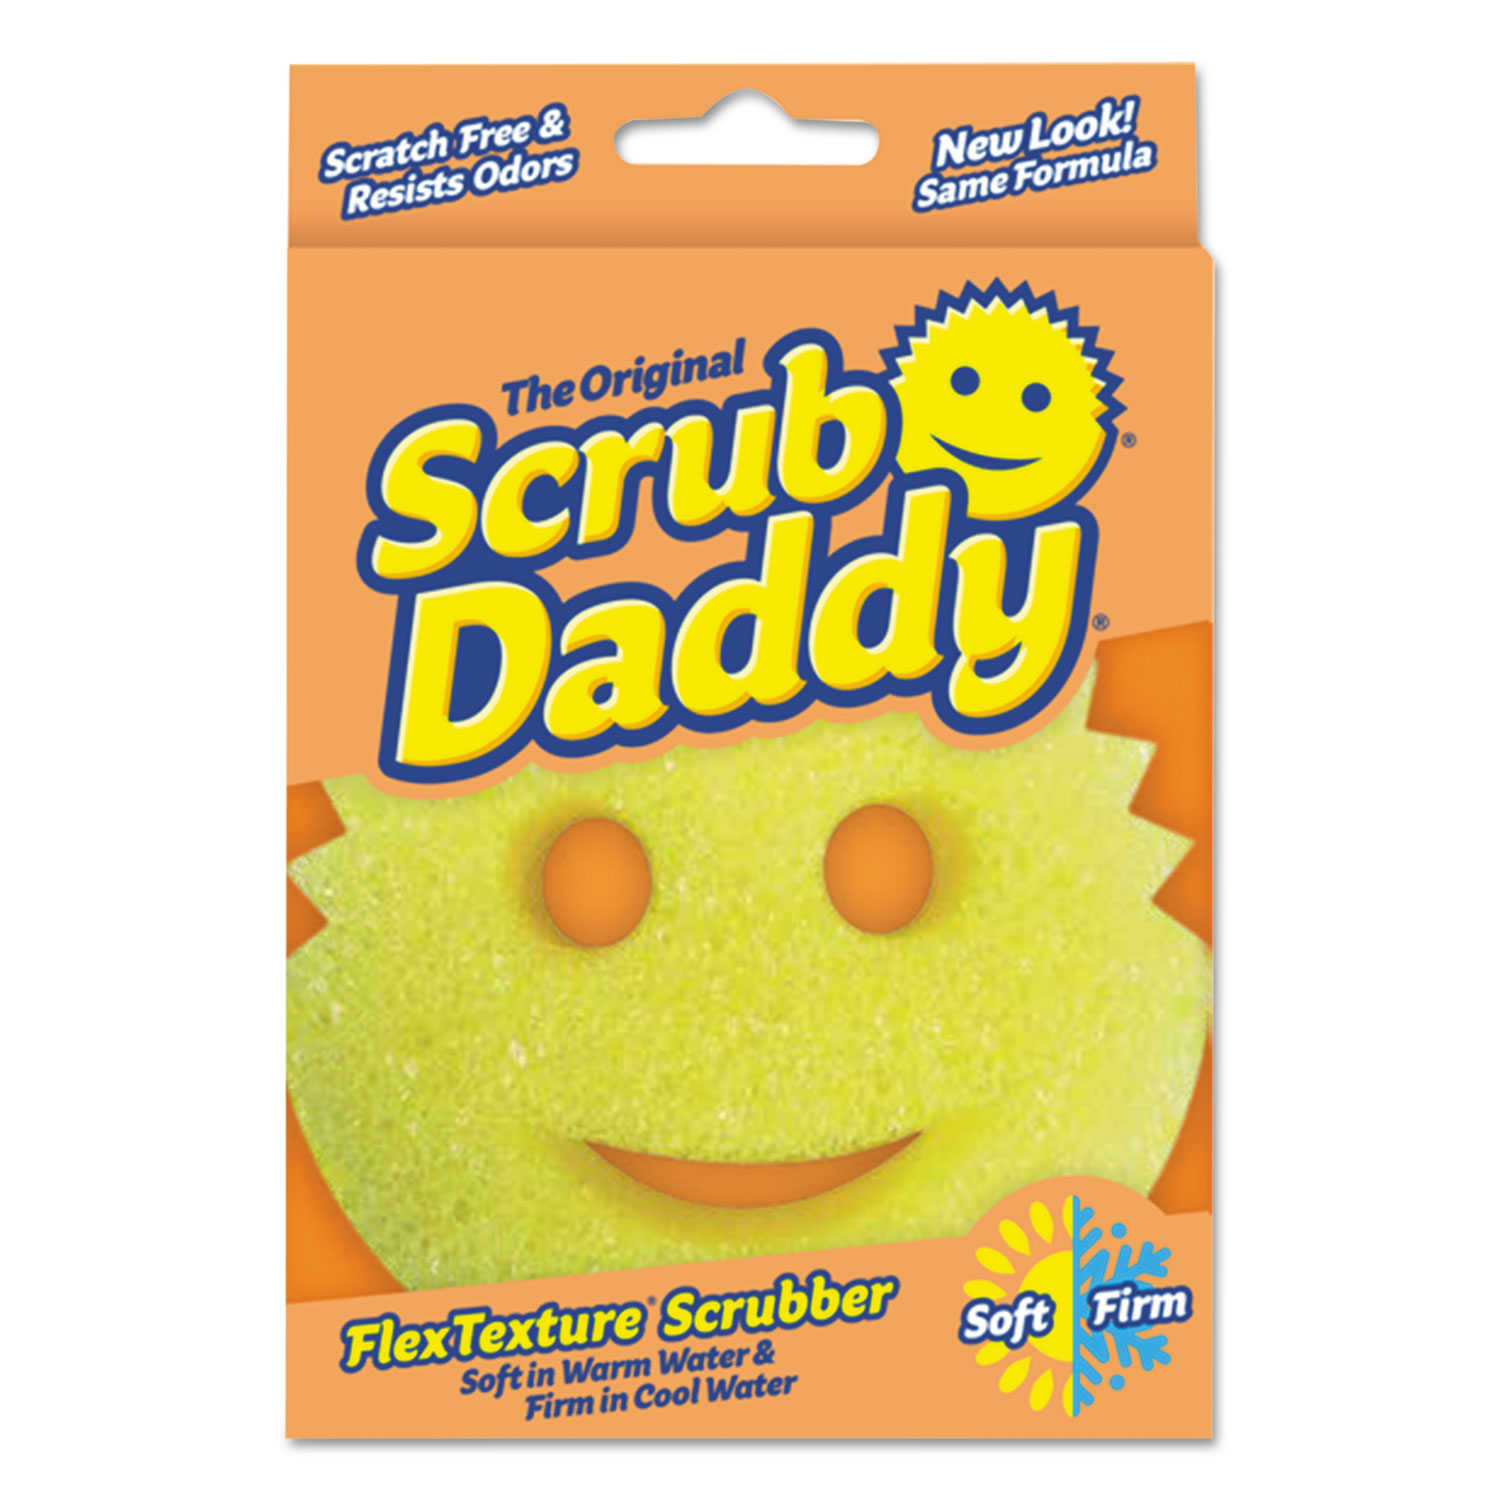 Scratch-Free Scrubbing Sponge, 4 1/8 Diameter, Yellow, Polymer Foam